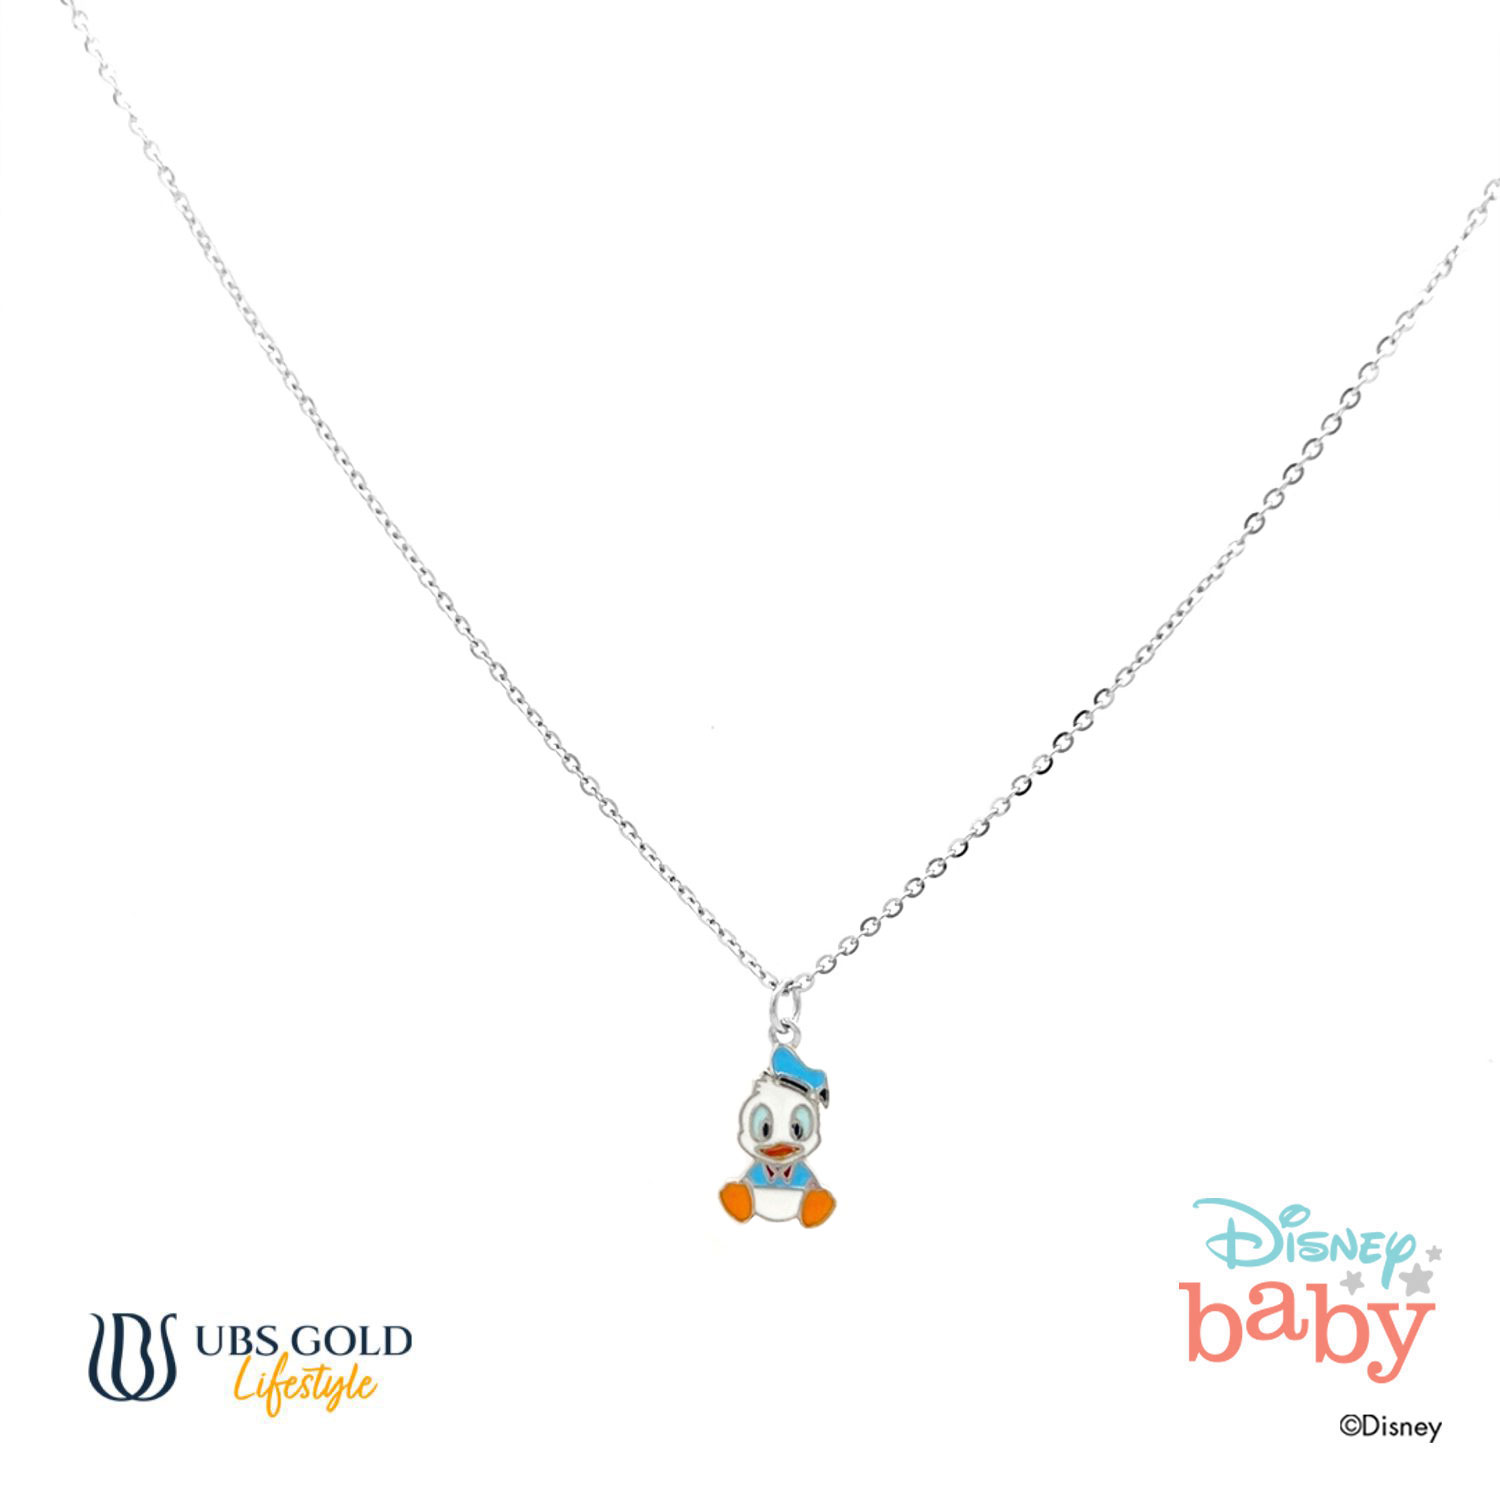 UBS Gold Kalung Emas Anak Disney Donald Duck - Kky0097B - 17K